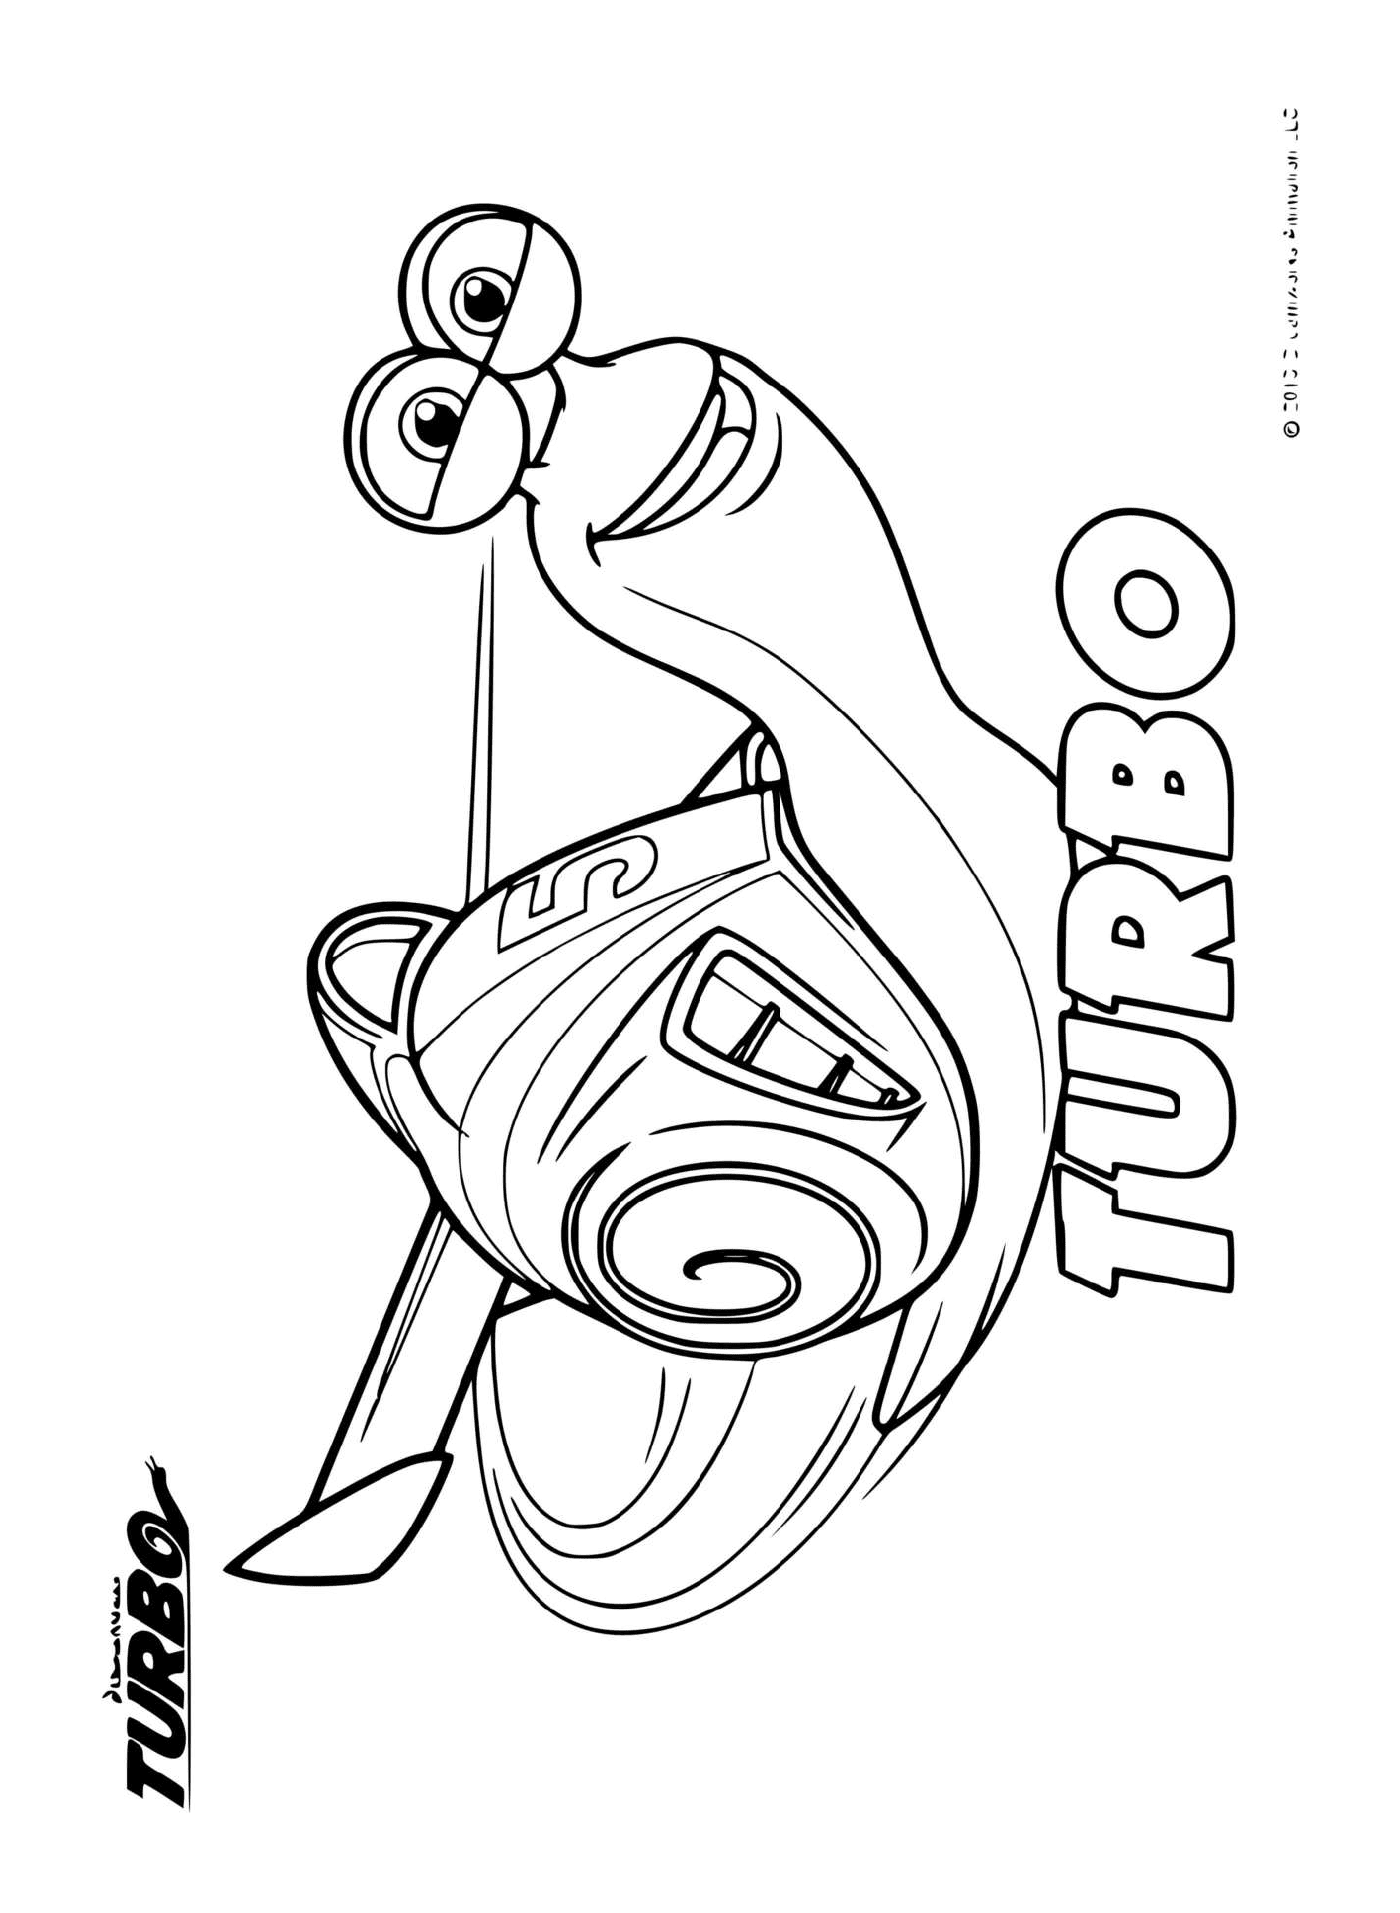  Turbo, caracol rápido de Dreamworks 